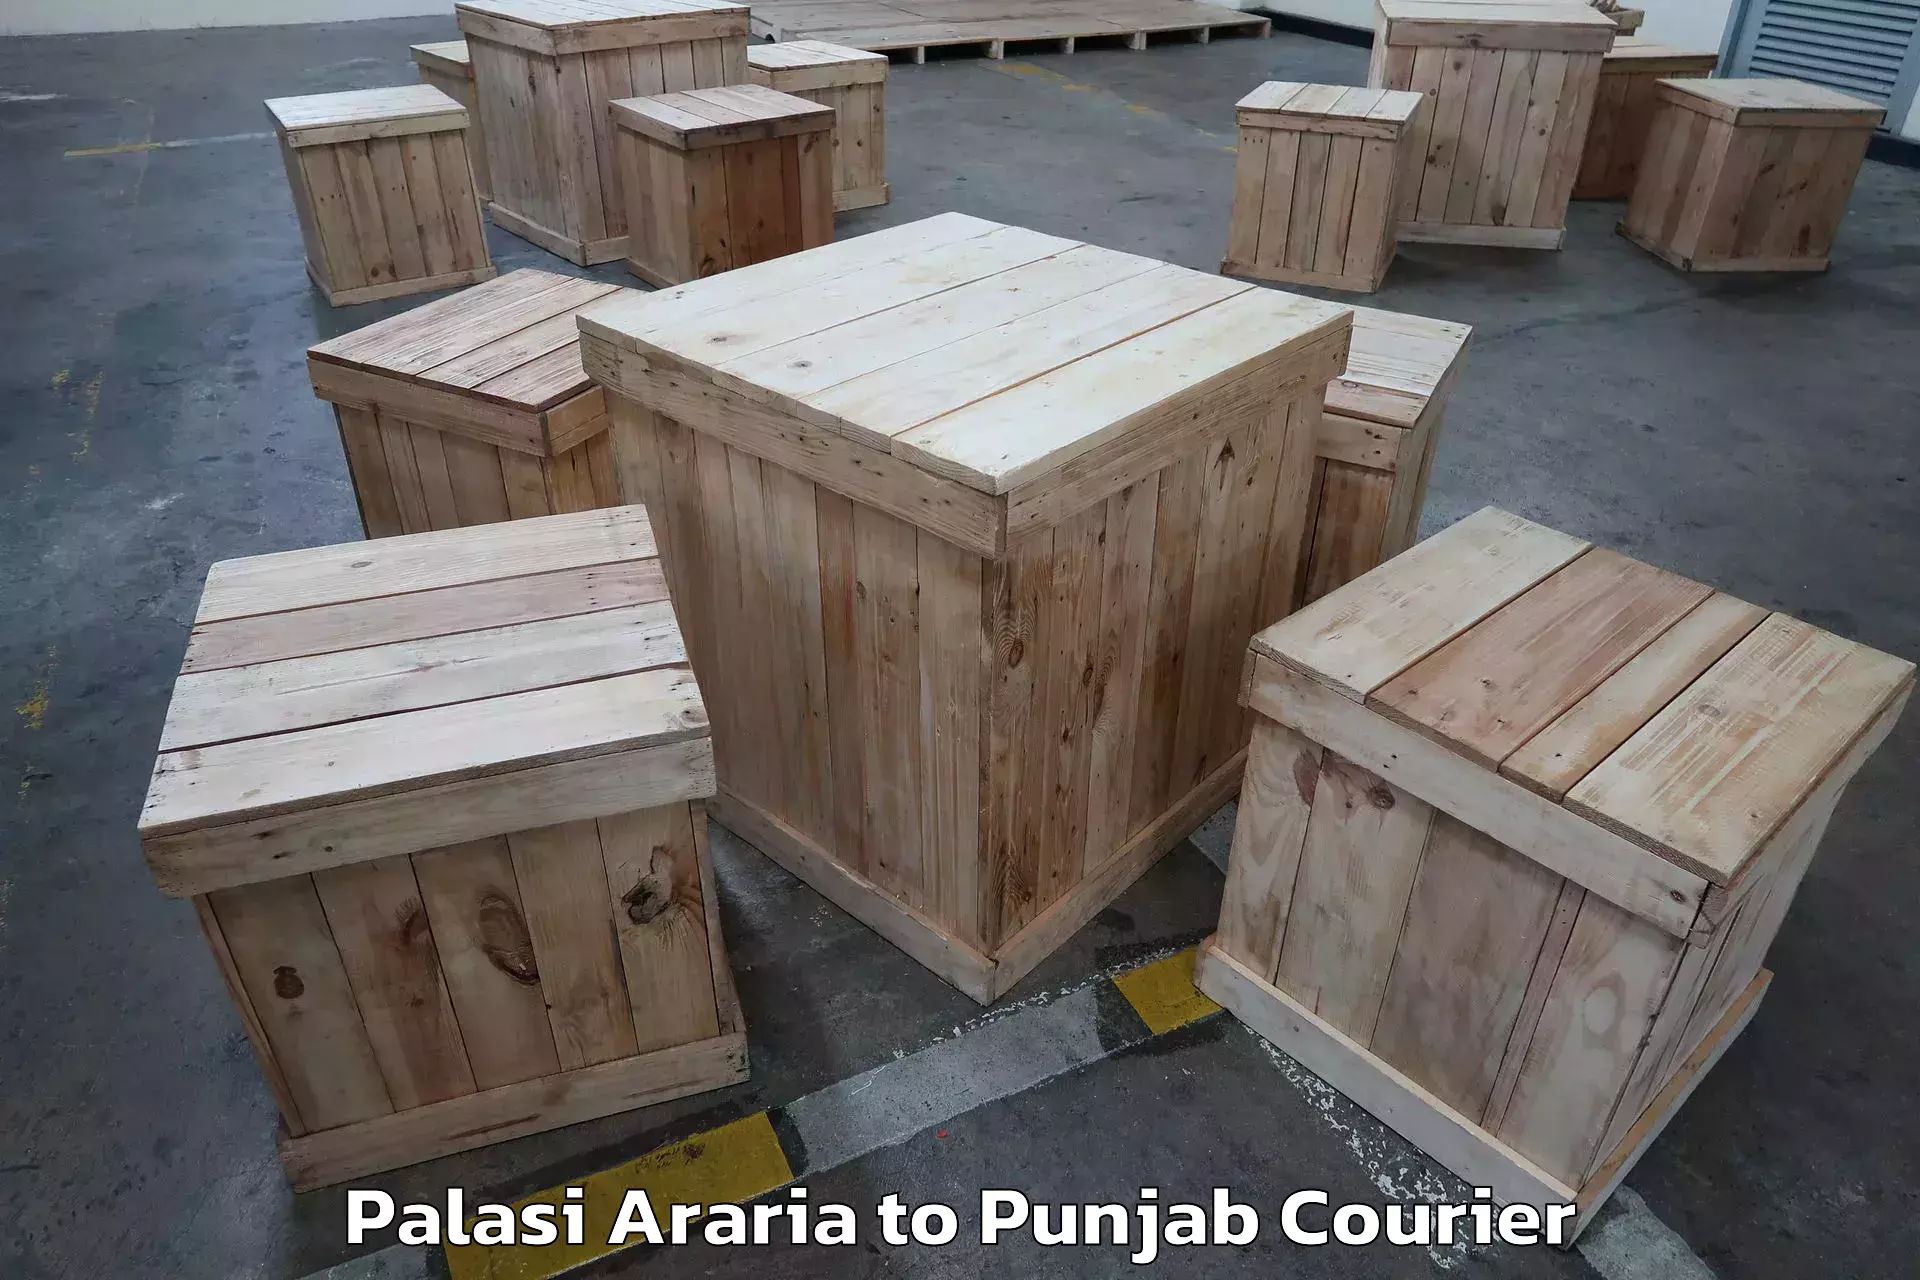 Personalized furniture moving Palasi Araria to Punjab